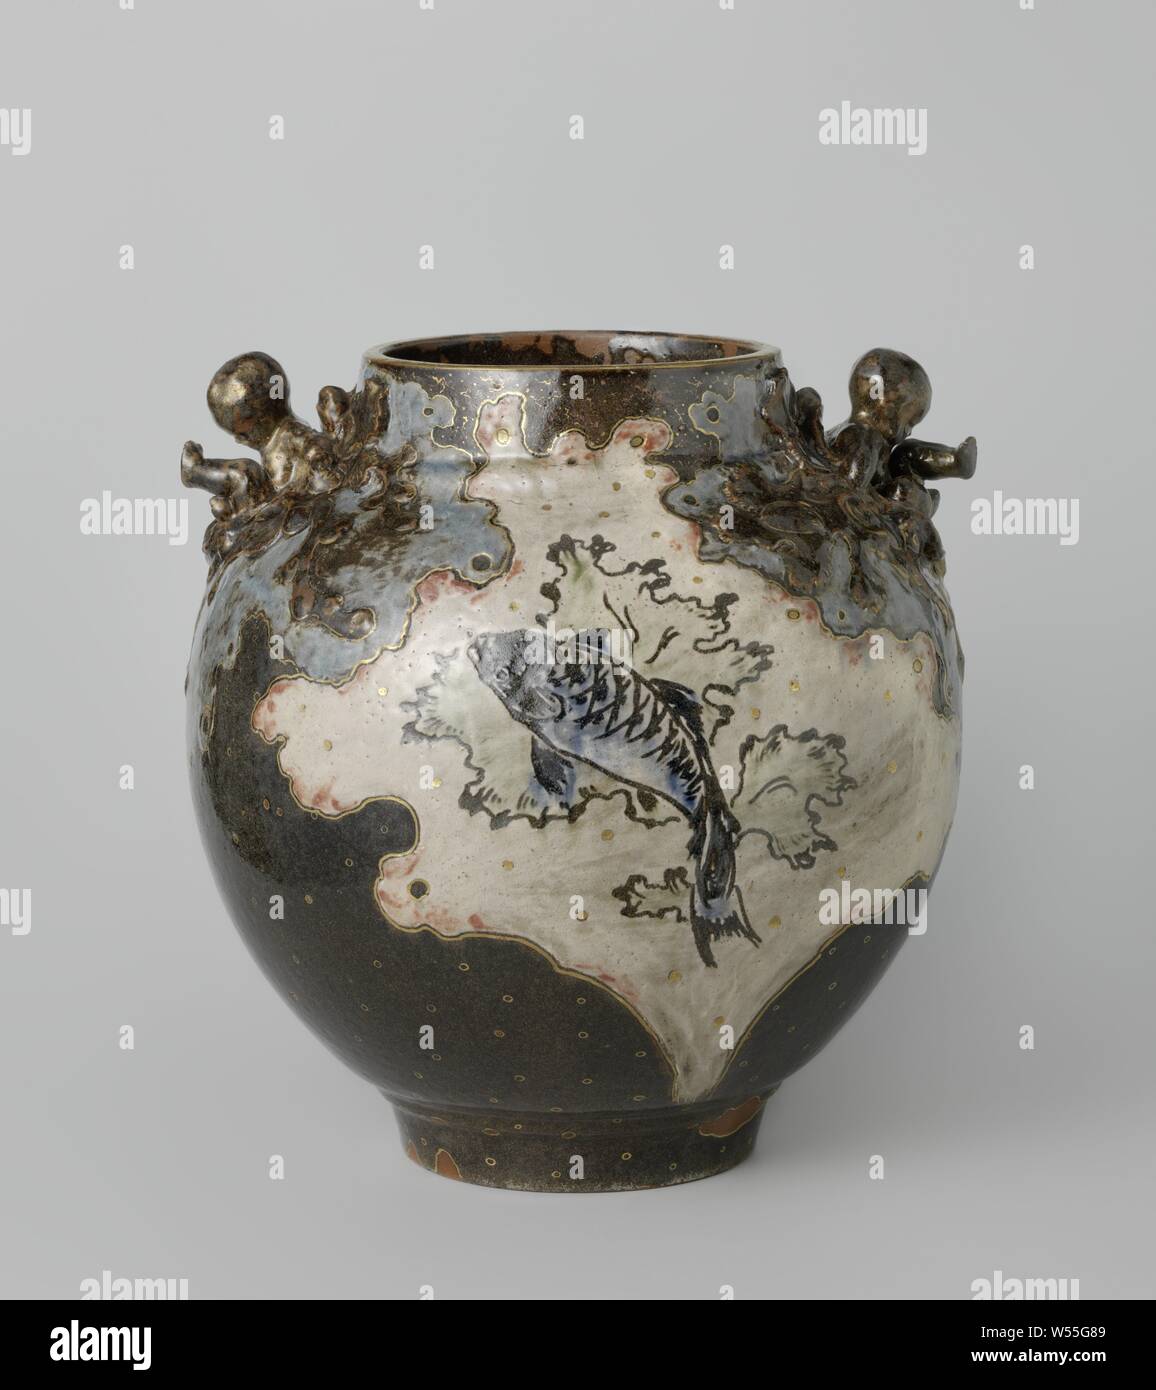 Vase, Ernest Chaplet, Paris, c. 1885 - c. 1886, stoneware, glaze, gilding (material), gilding, h 32.5 cm × w 31.3 cm Stock Photo